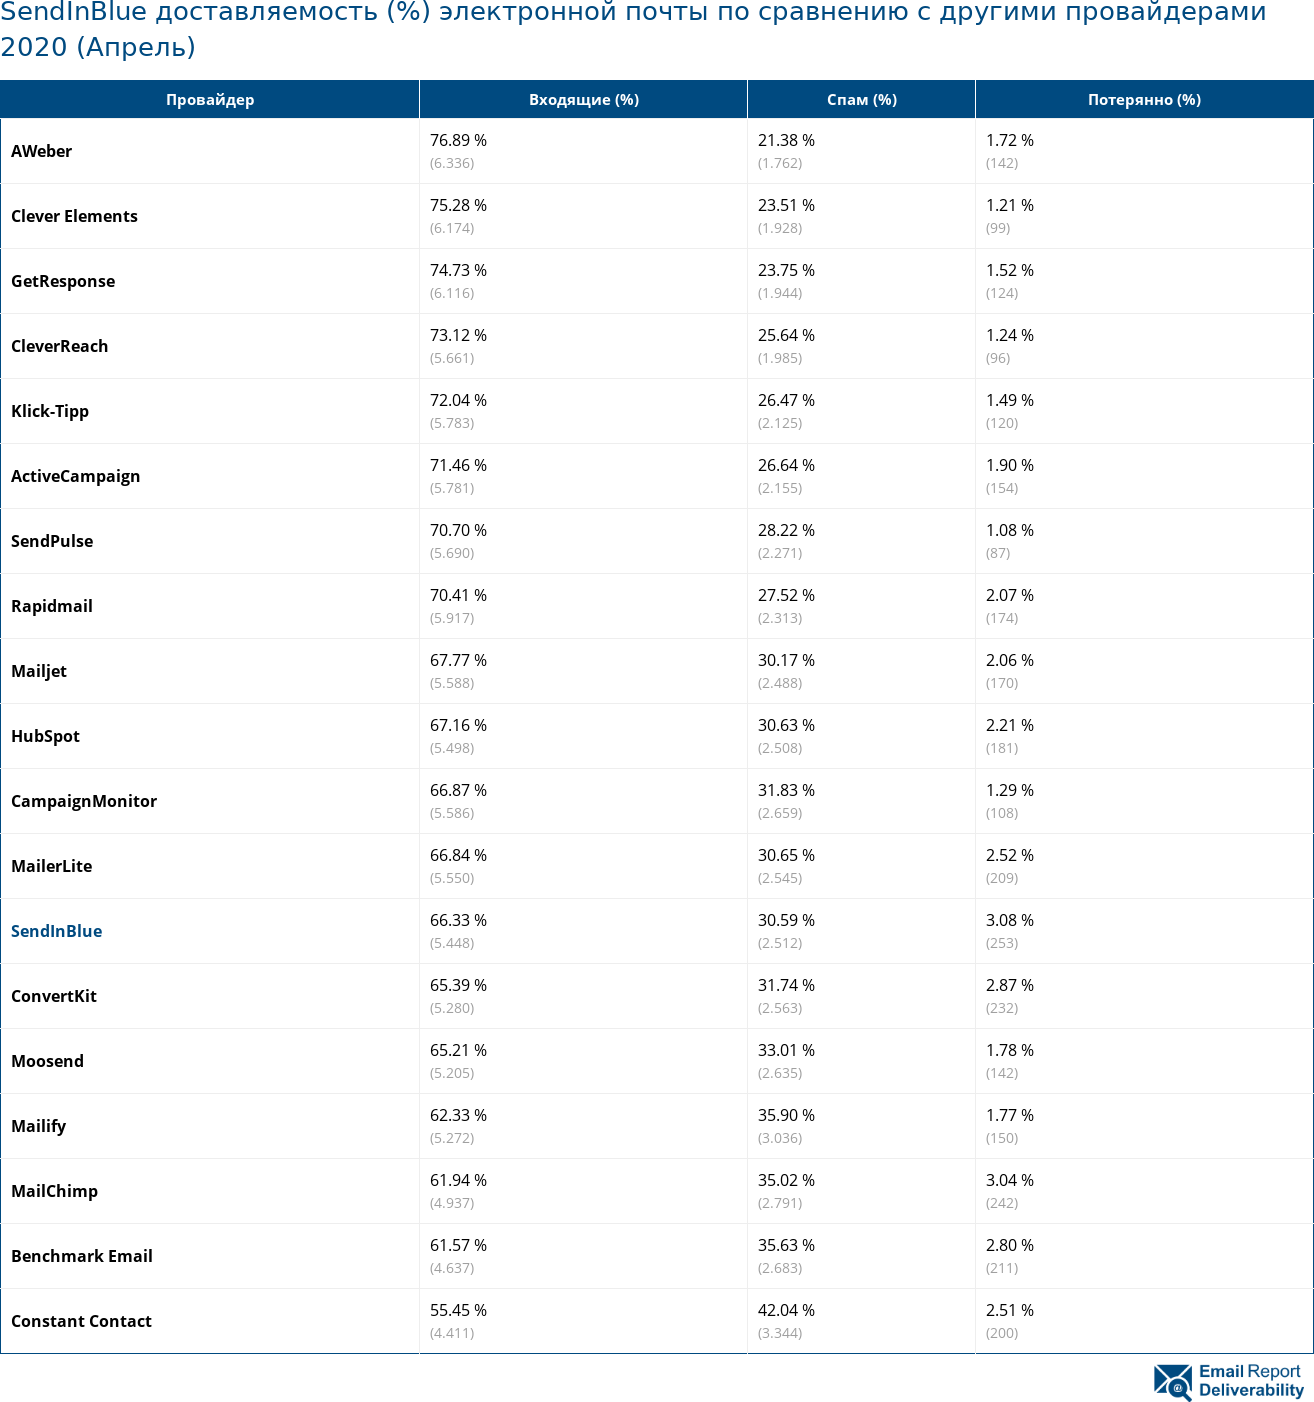 SendInBlue доставляемость (%) электронной почты по сравнению с другими провайдерами 2020 (Апрель)